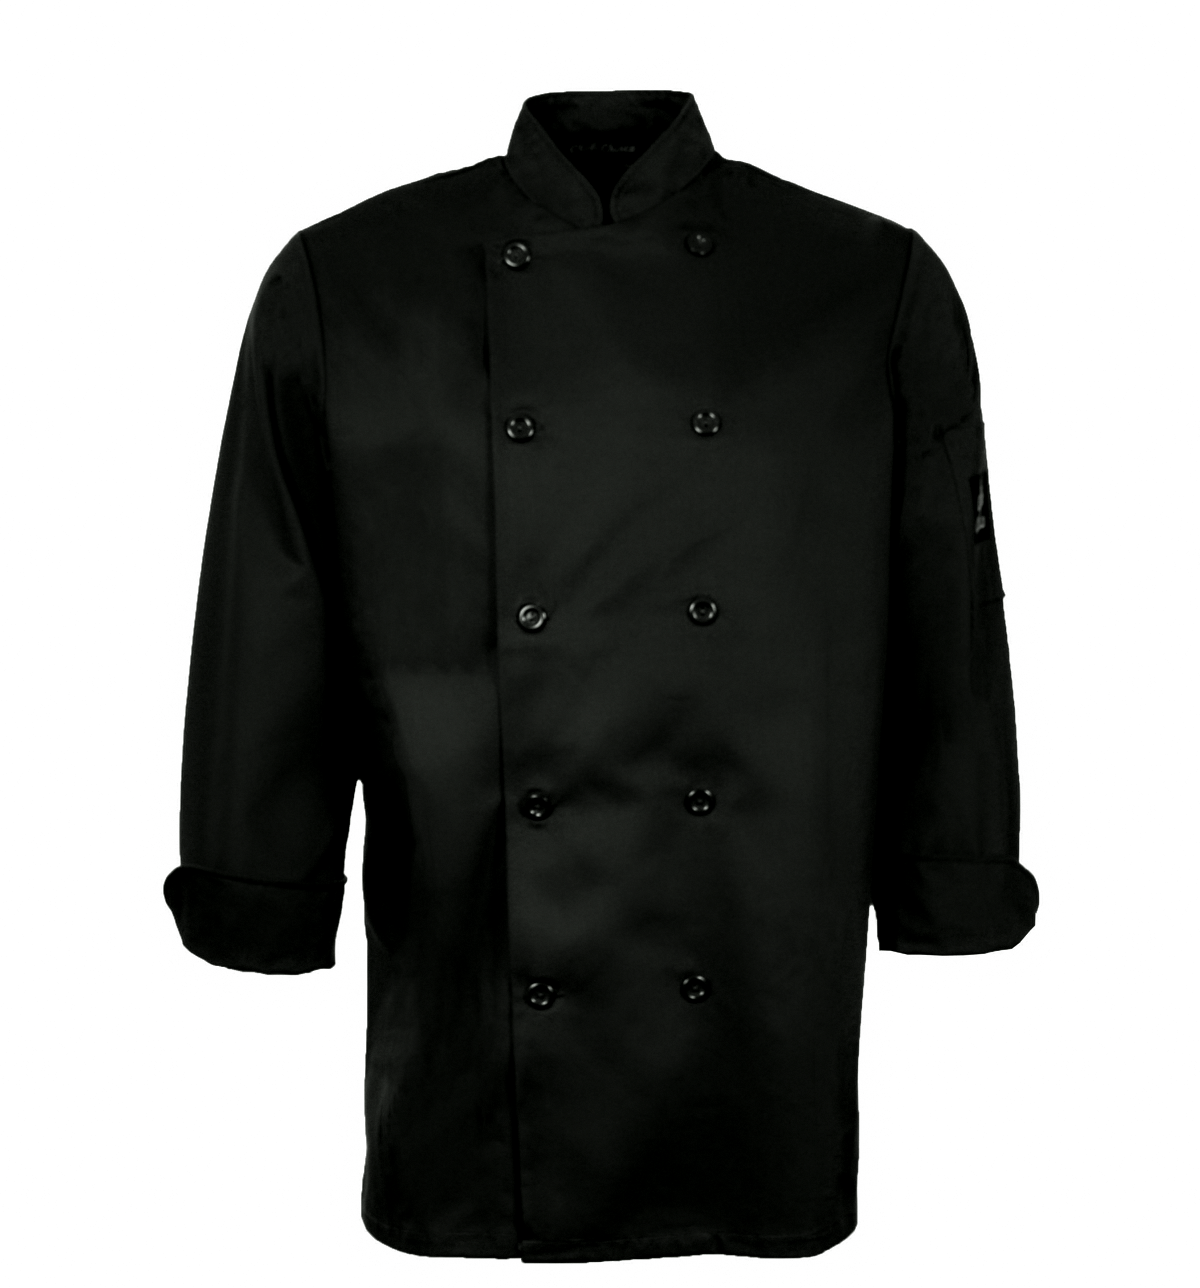 Veste de chef unisexe à manches longues Chefs choice Premium Uniforms #5353 noir